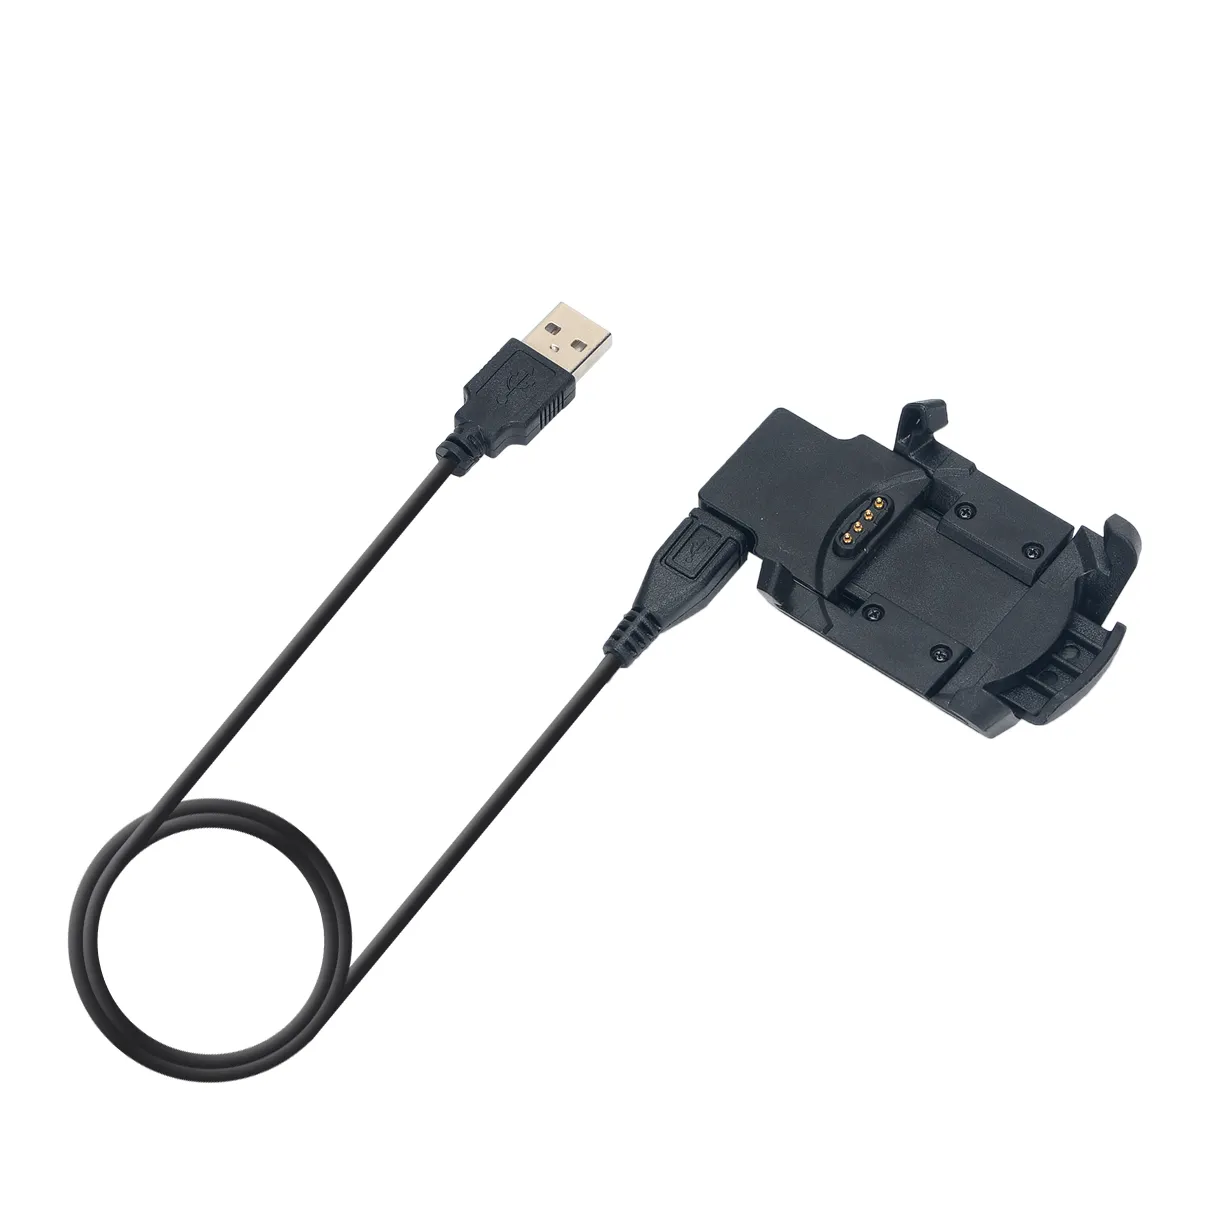 교체 USB 데이터 동기화 충전 케이블 크래들 도크 충전기 클립 Garmin Fenix 3 HR/Fenix 3 / Quatix 3 스마트 시계